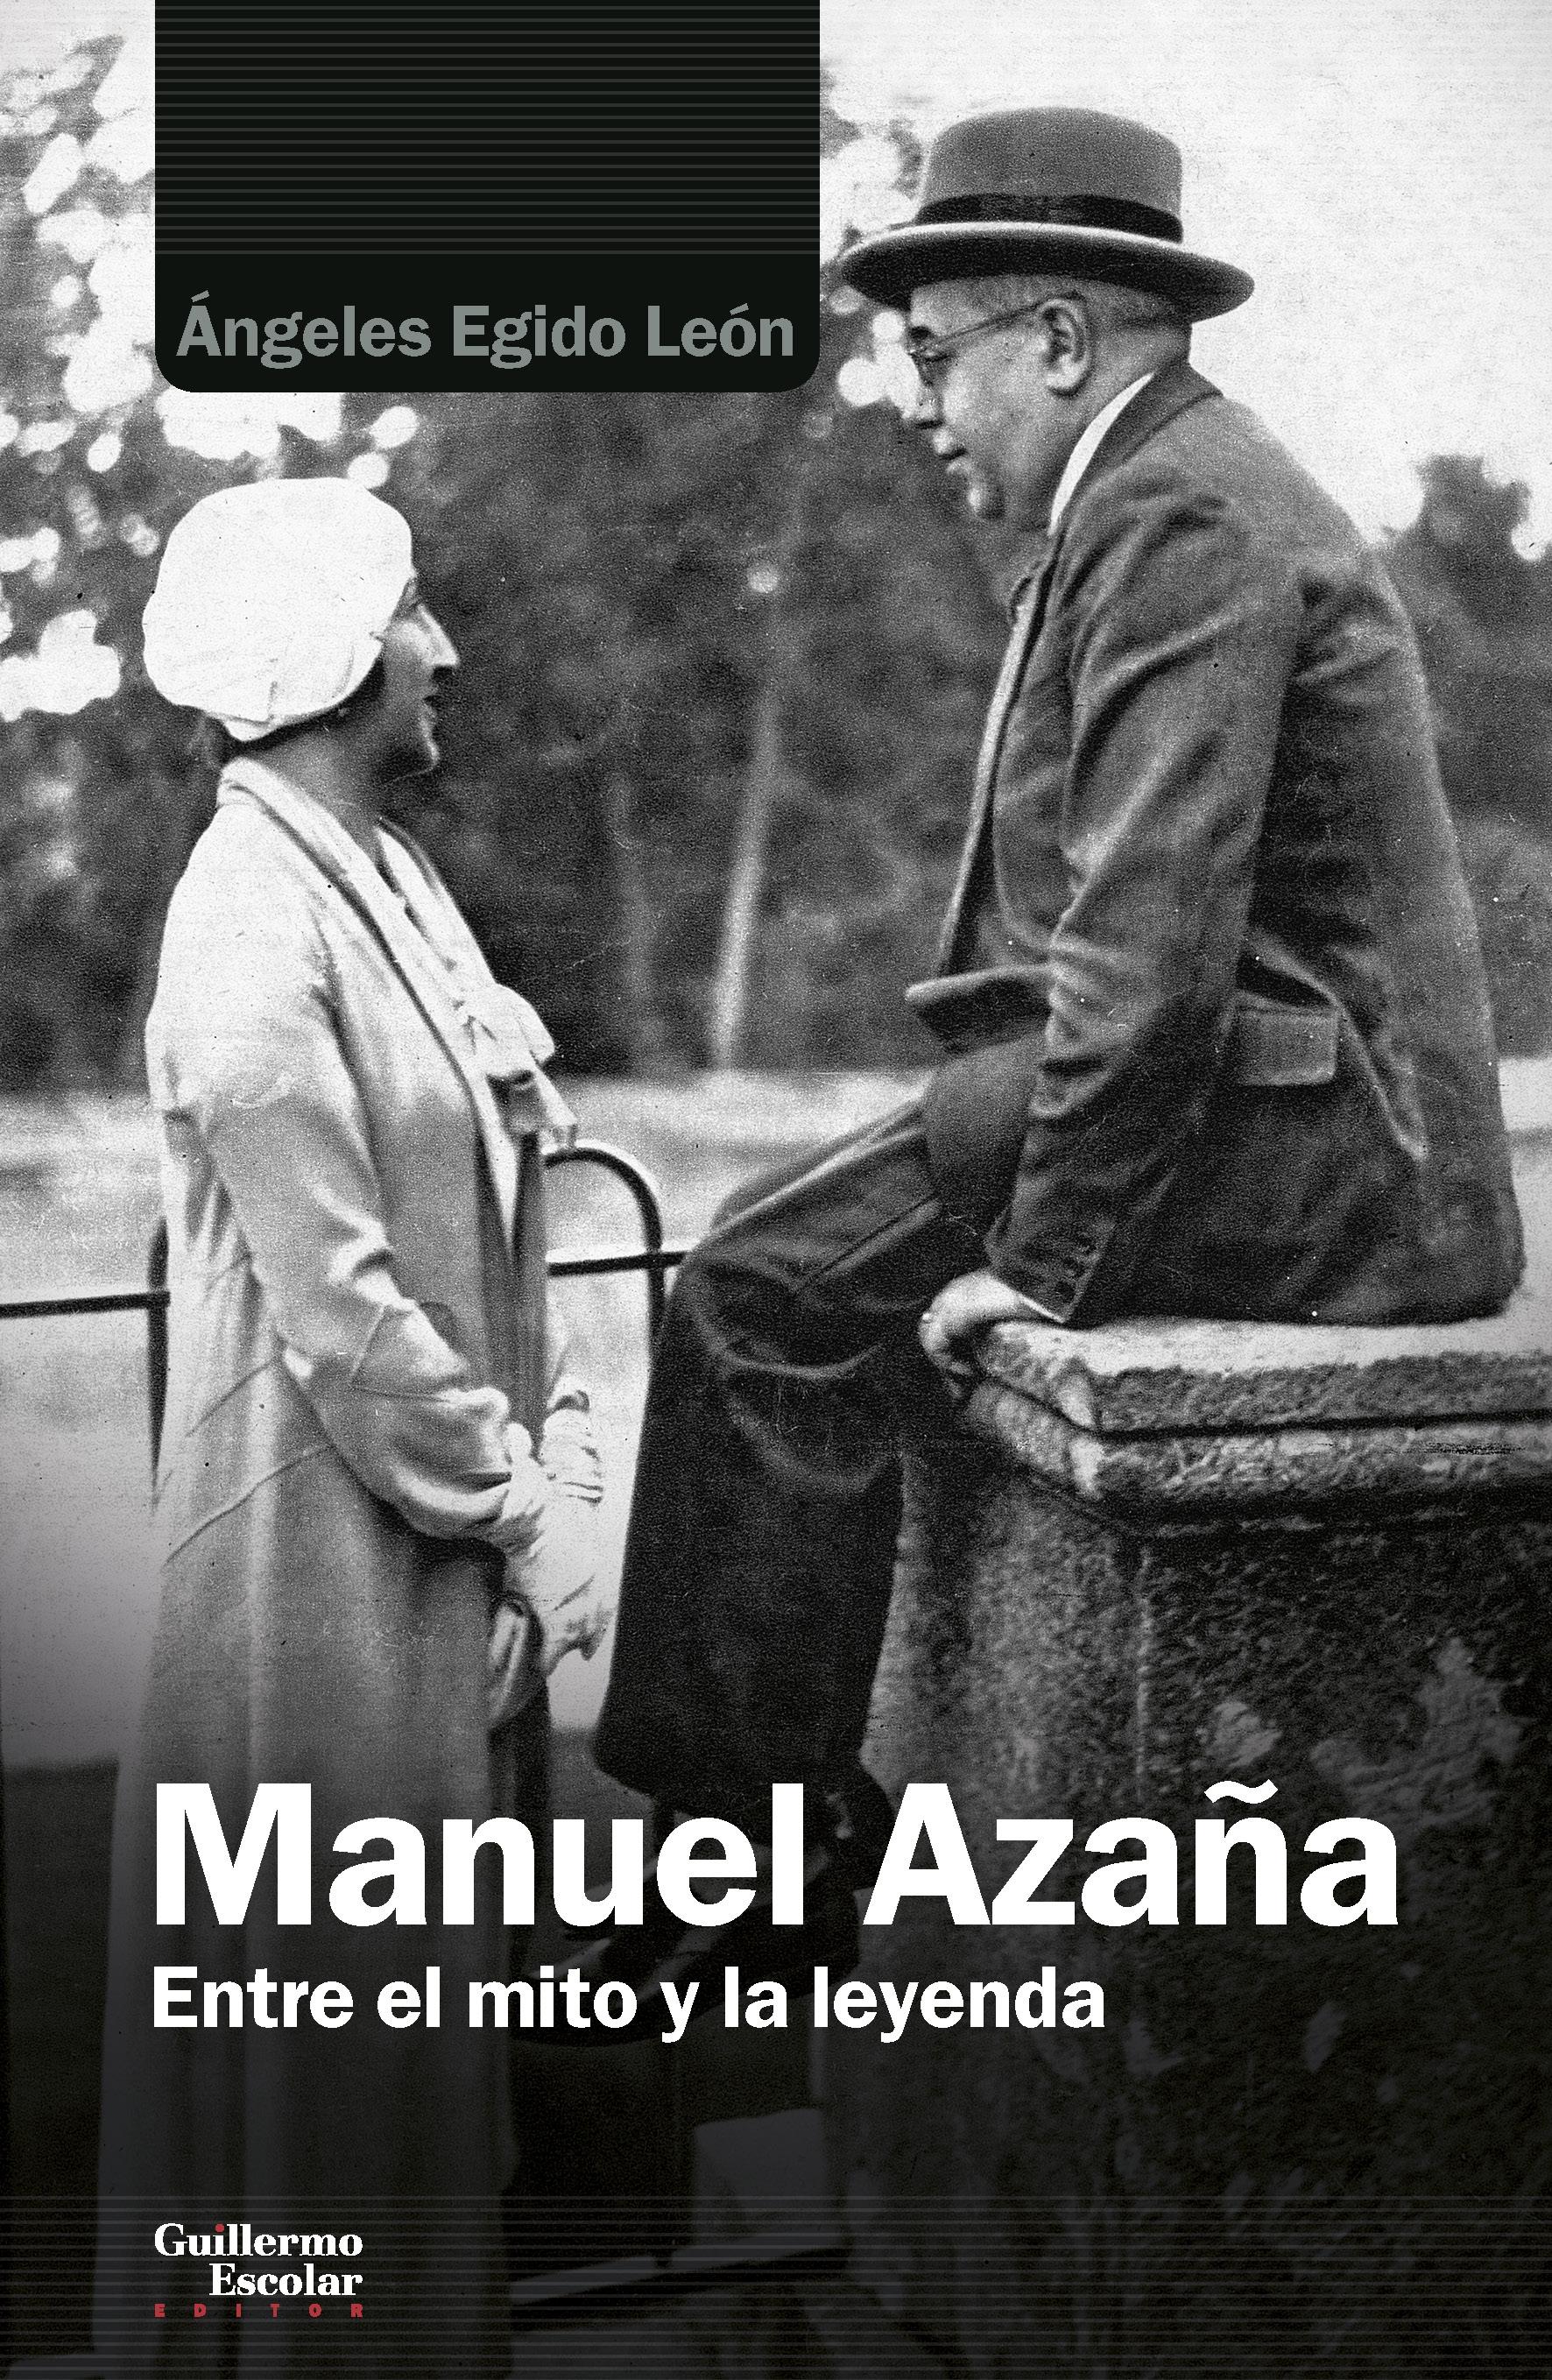 Manuel Azaña "Entre el mito y la leyenda". 